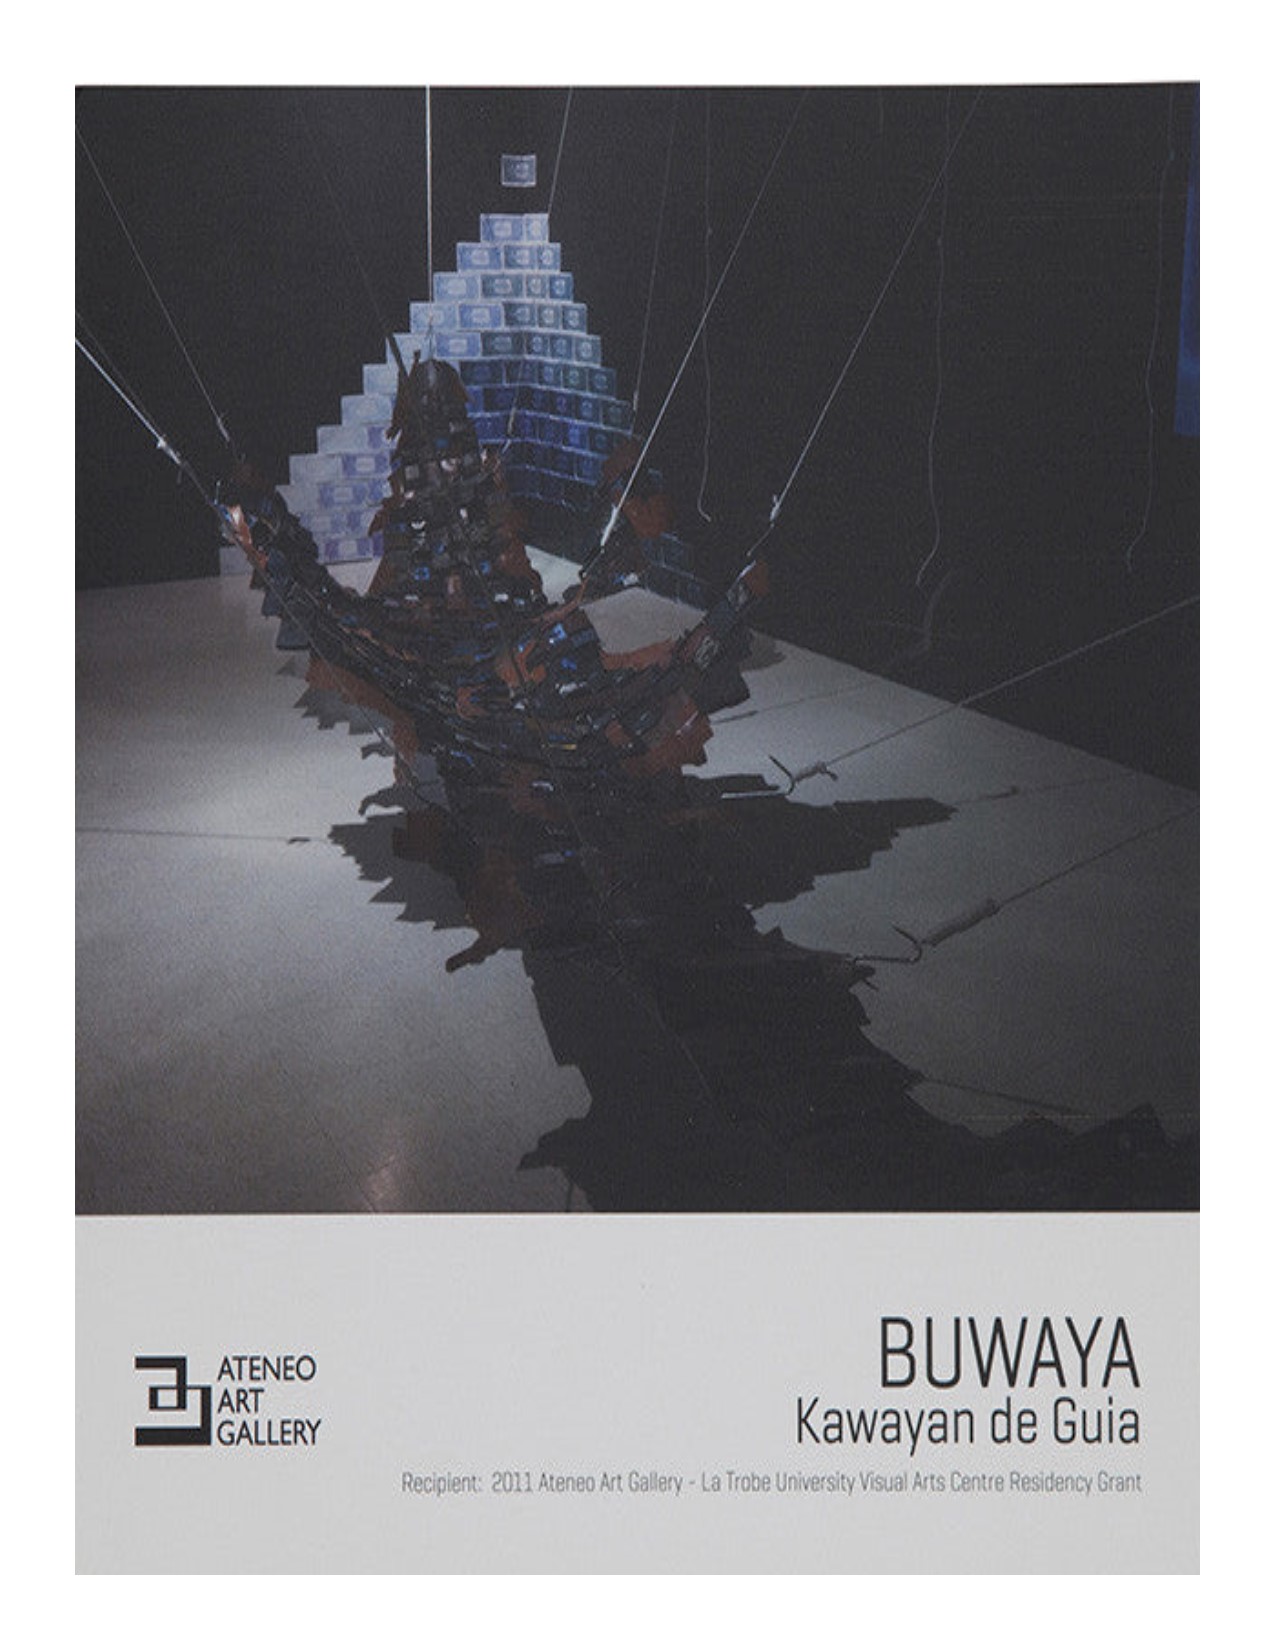 Buwaya Kawayan de Guia